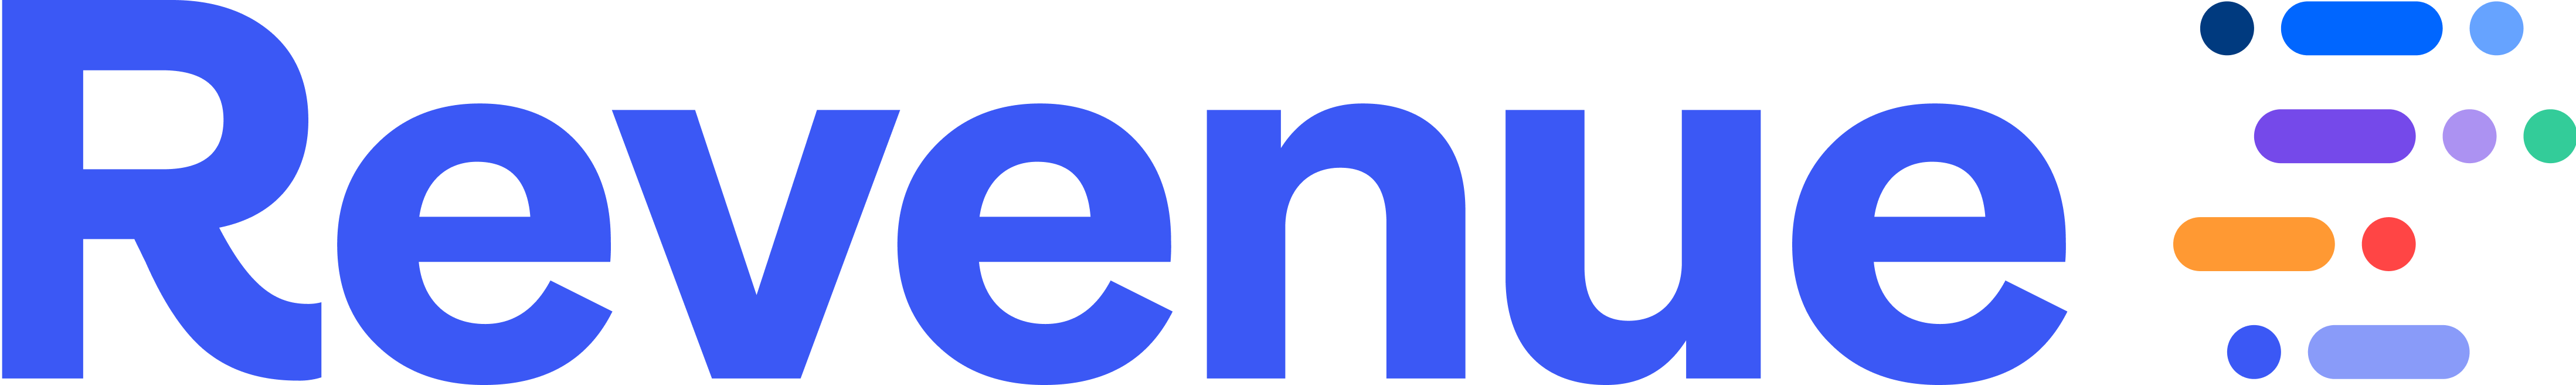 revenue_logo